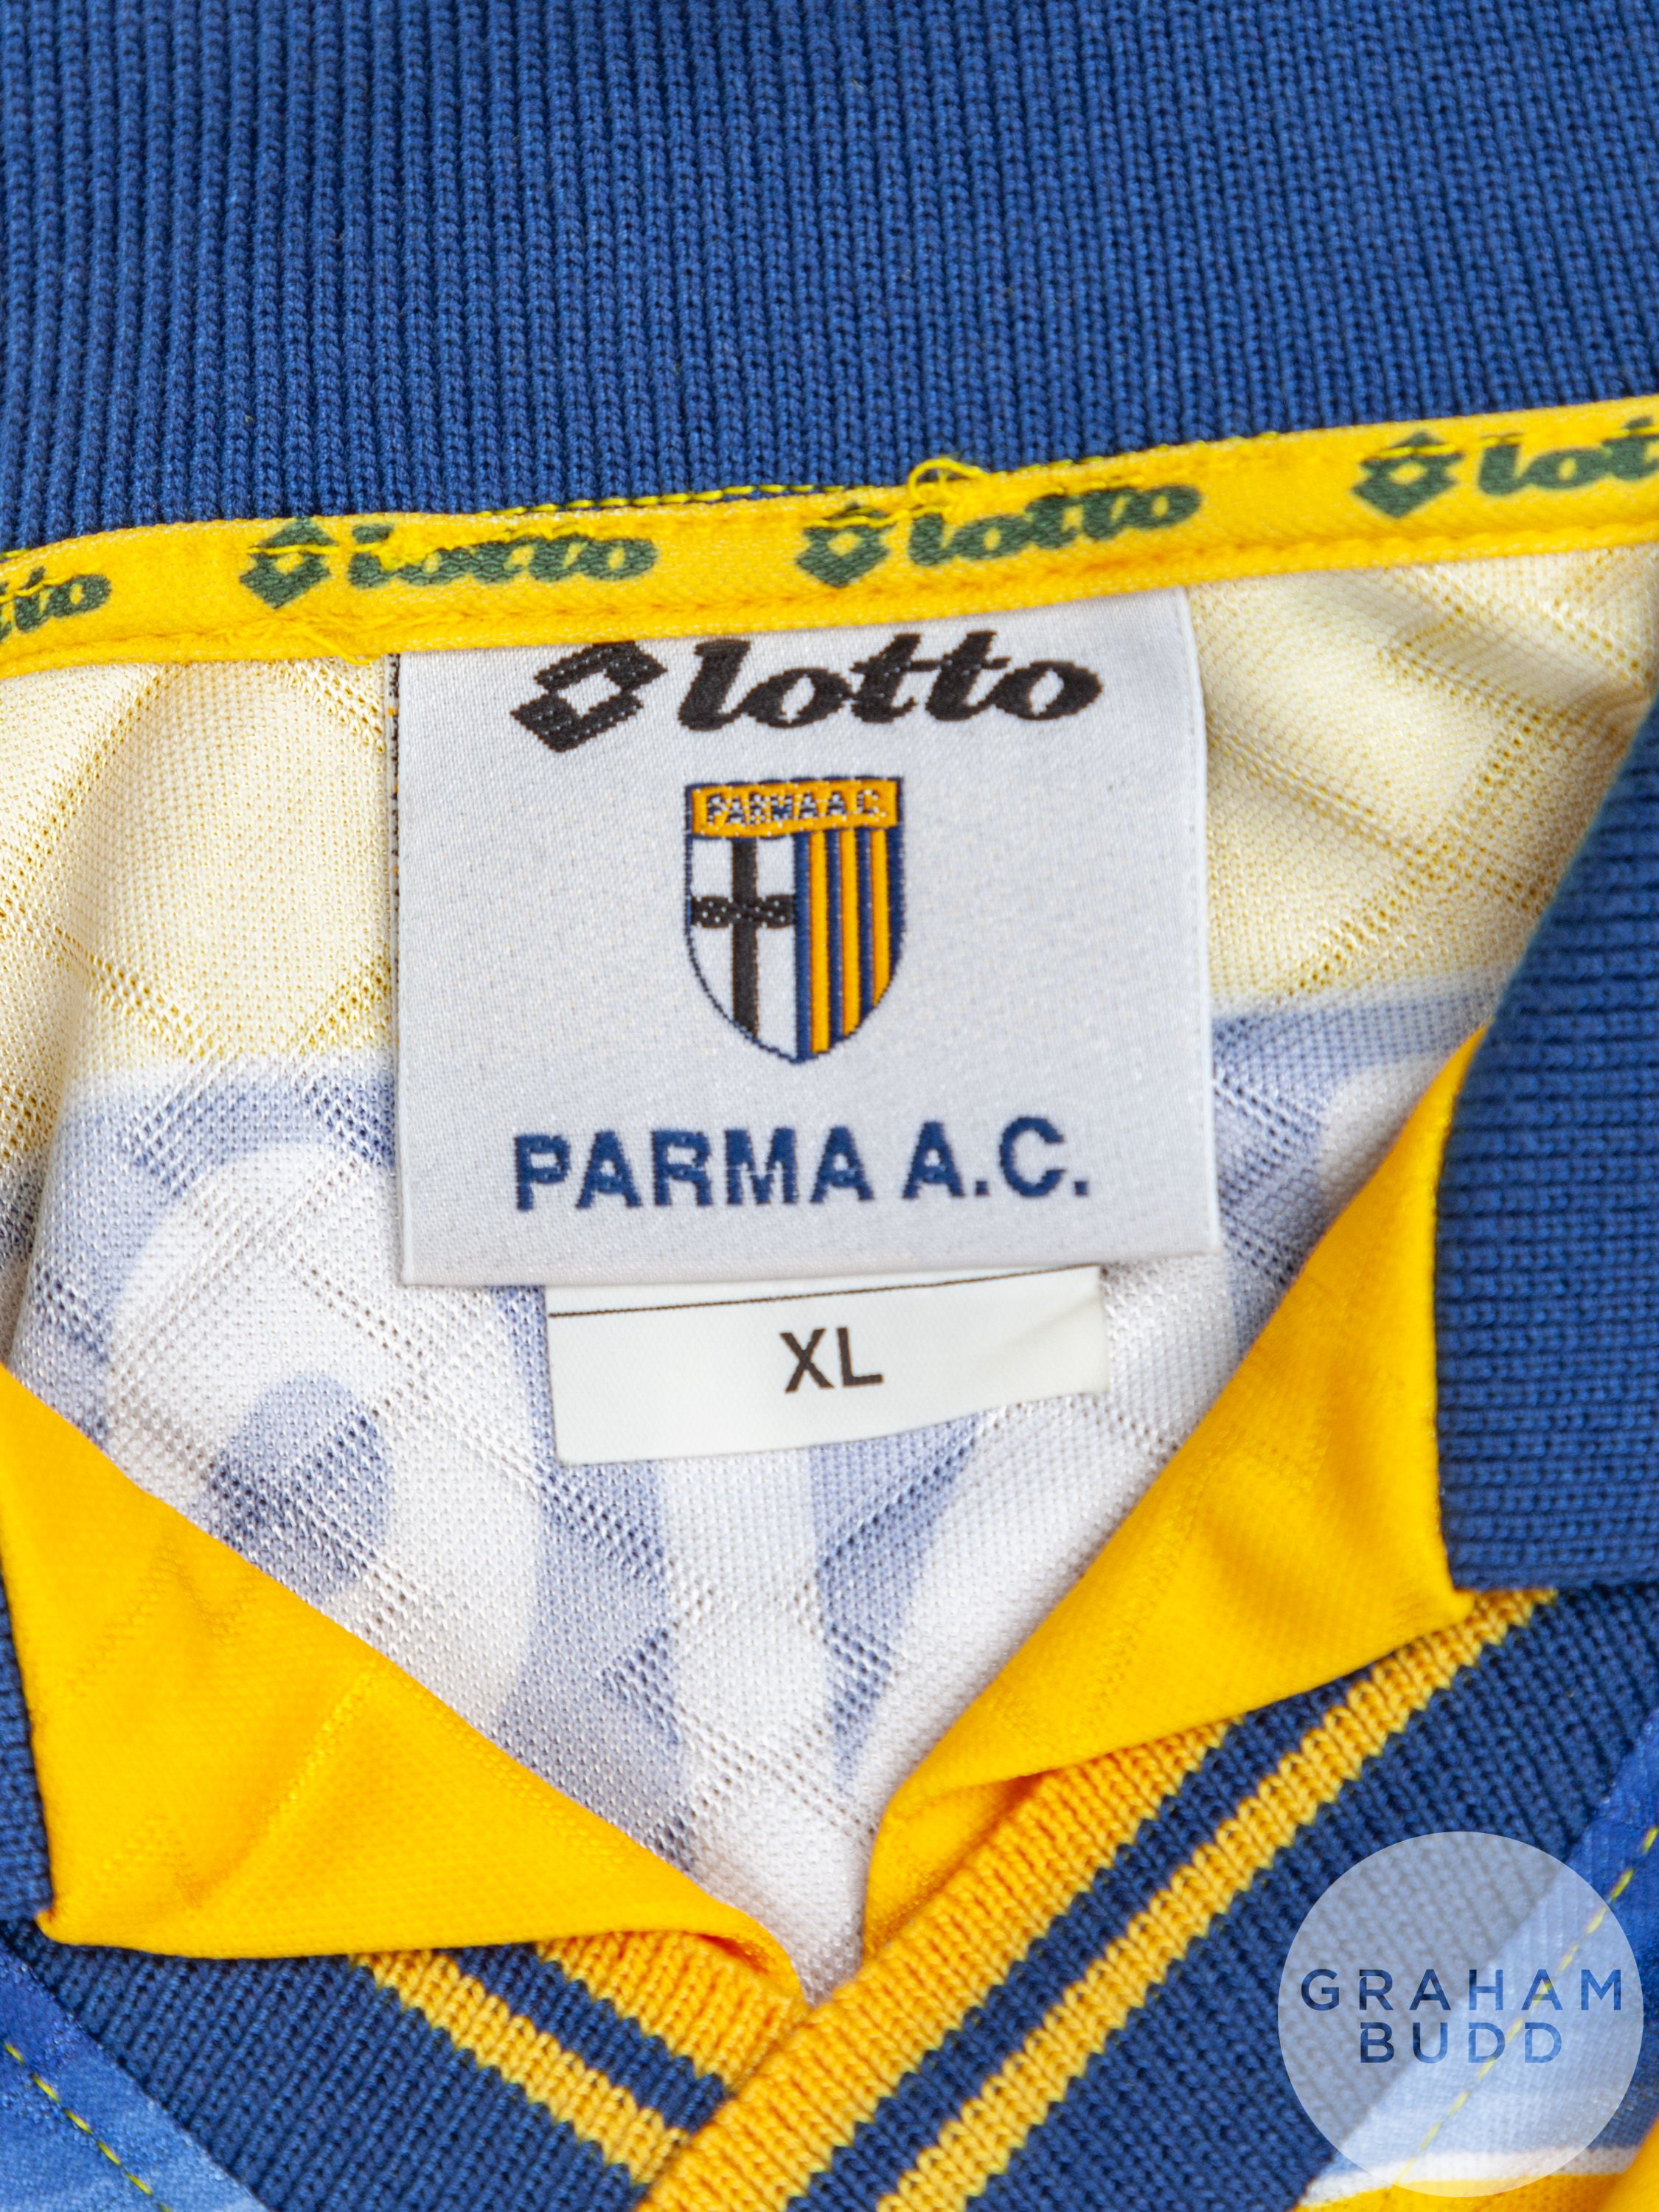 Roberto Sensini yellow and blue No.6 Parma long-sleeved shirt, 1998 - Image 4 of 5